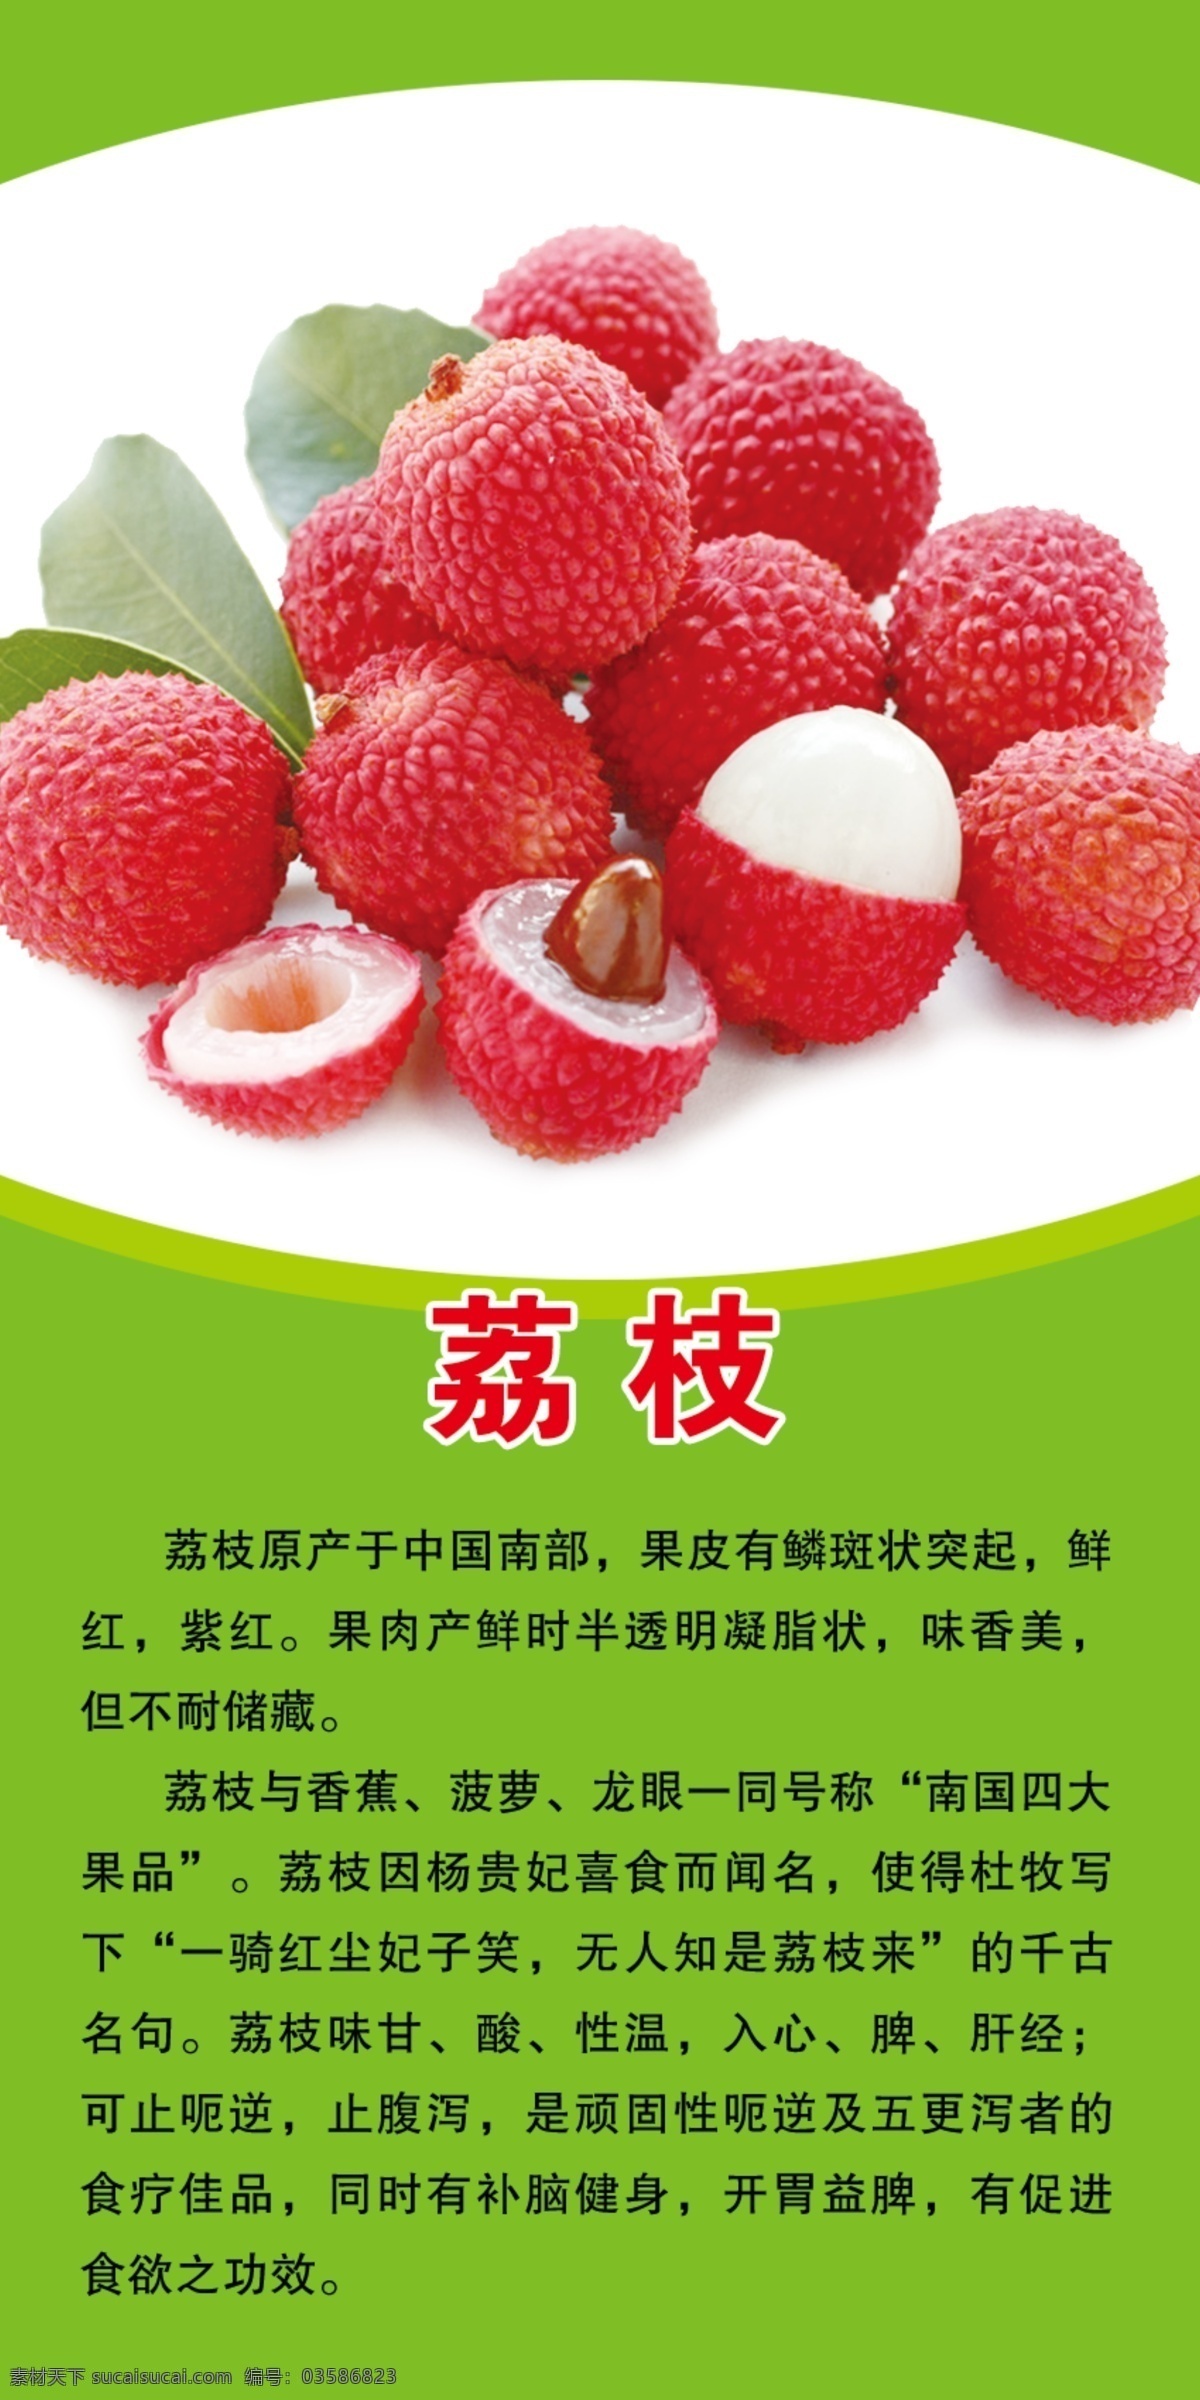 荔枝 水果介绍 绿色 生鲜店 水果好处 宣传挂图 室外广告设计